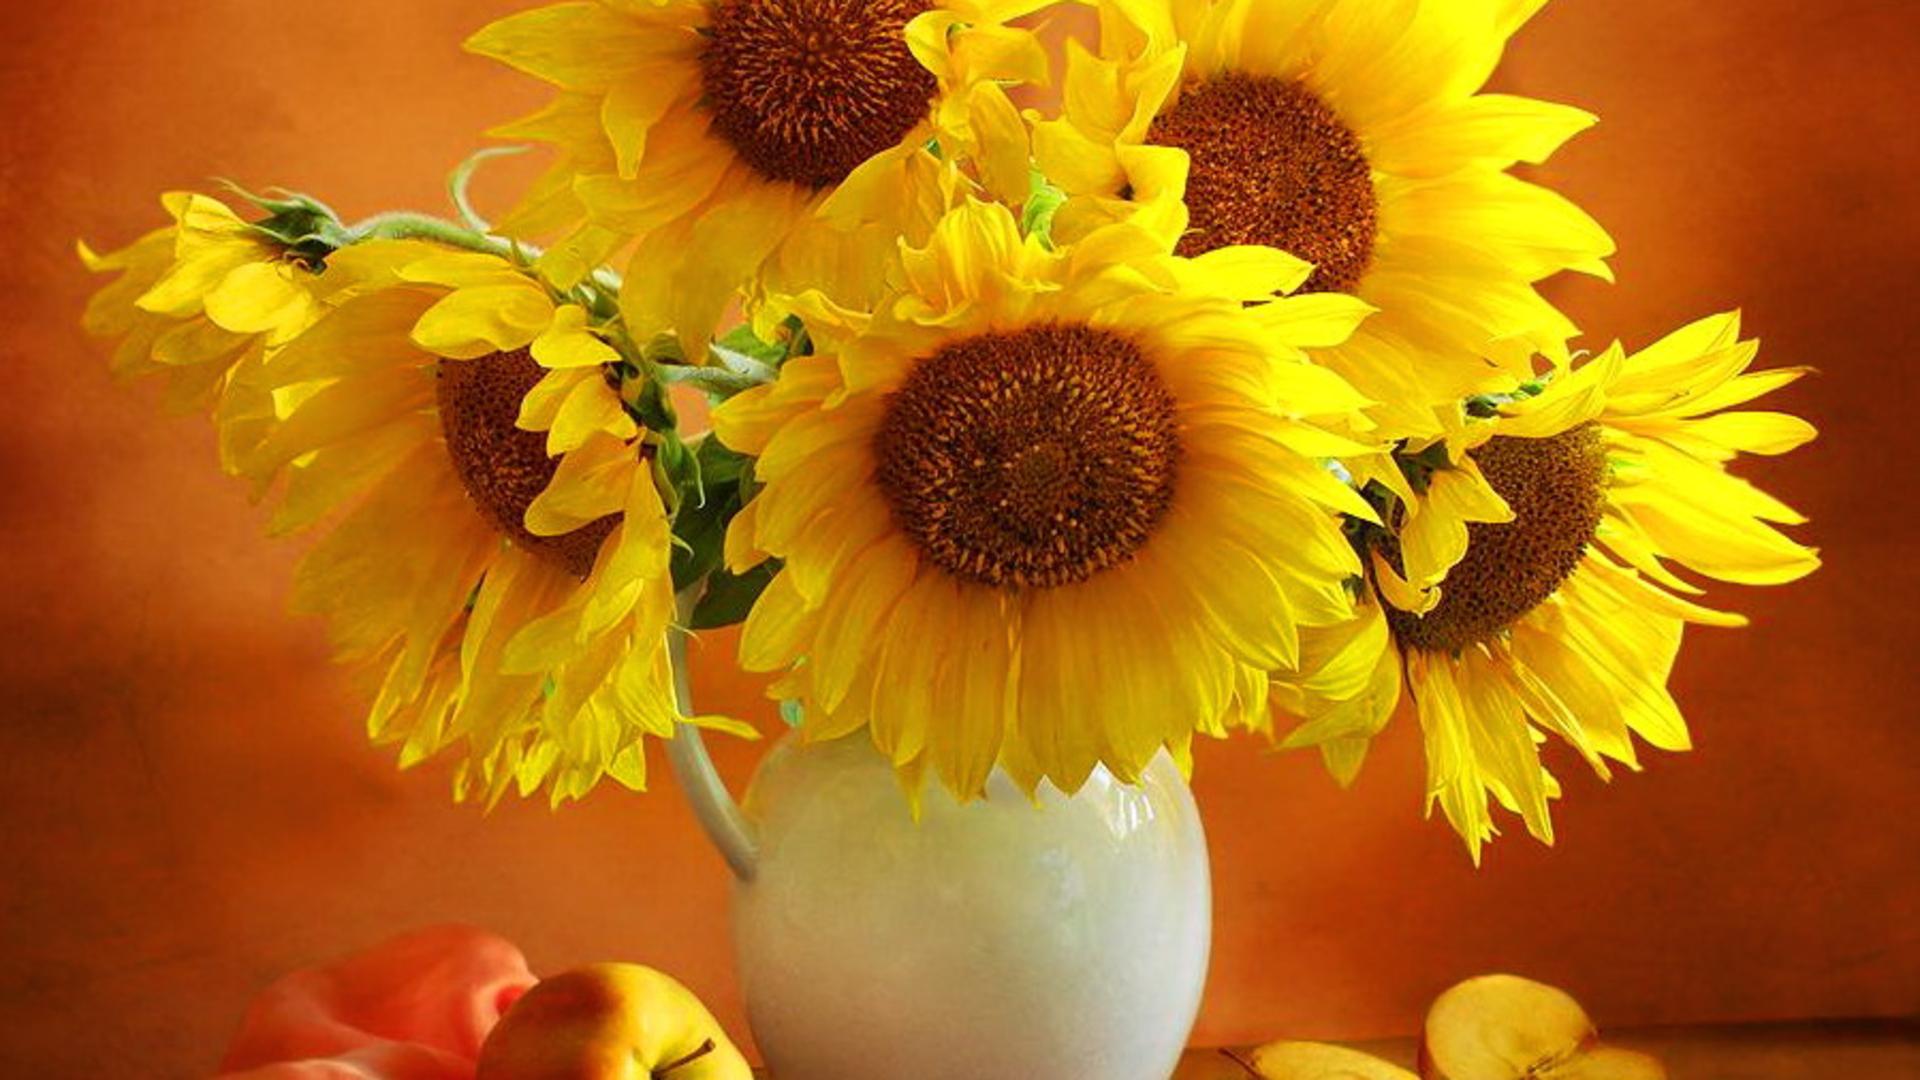 Yellow Flowers In Vase Desktop Wallpaper Background